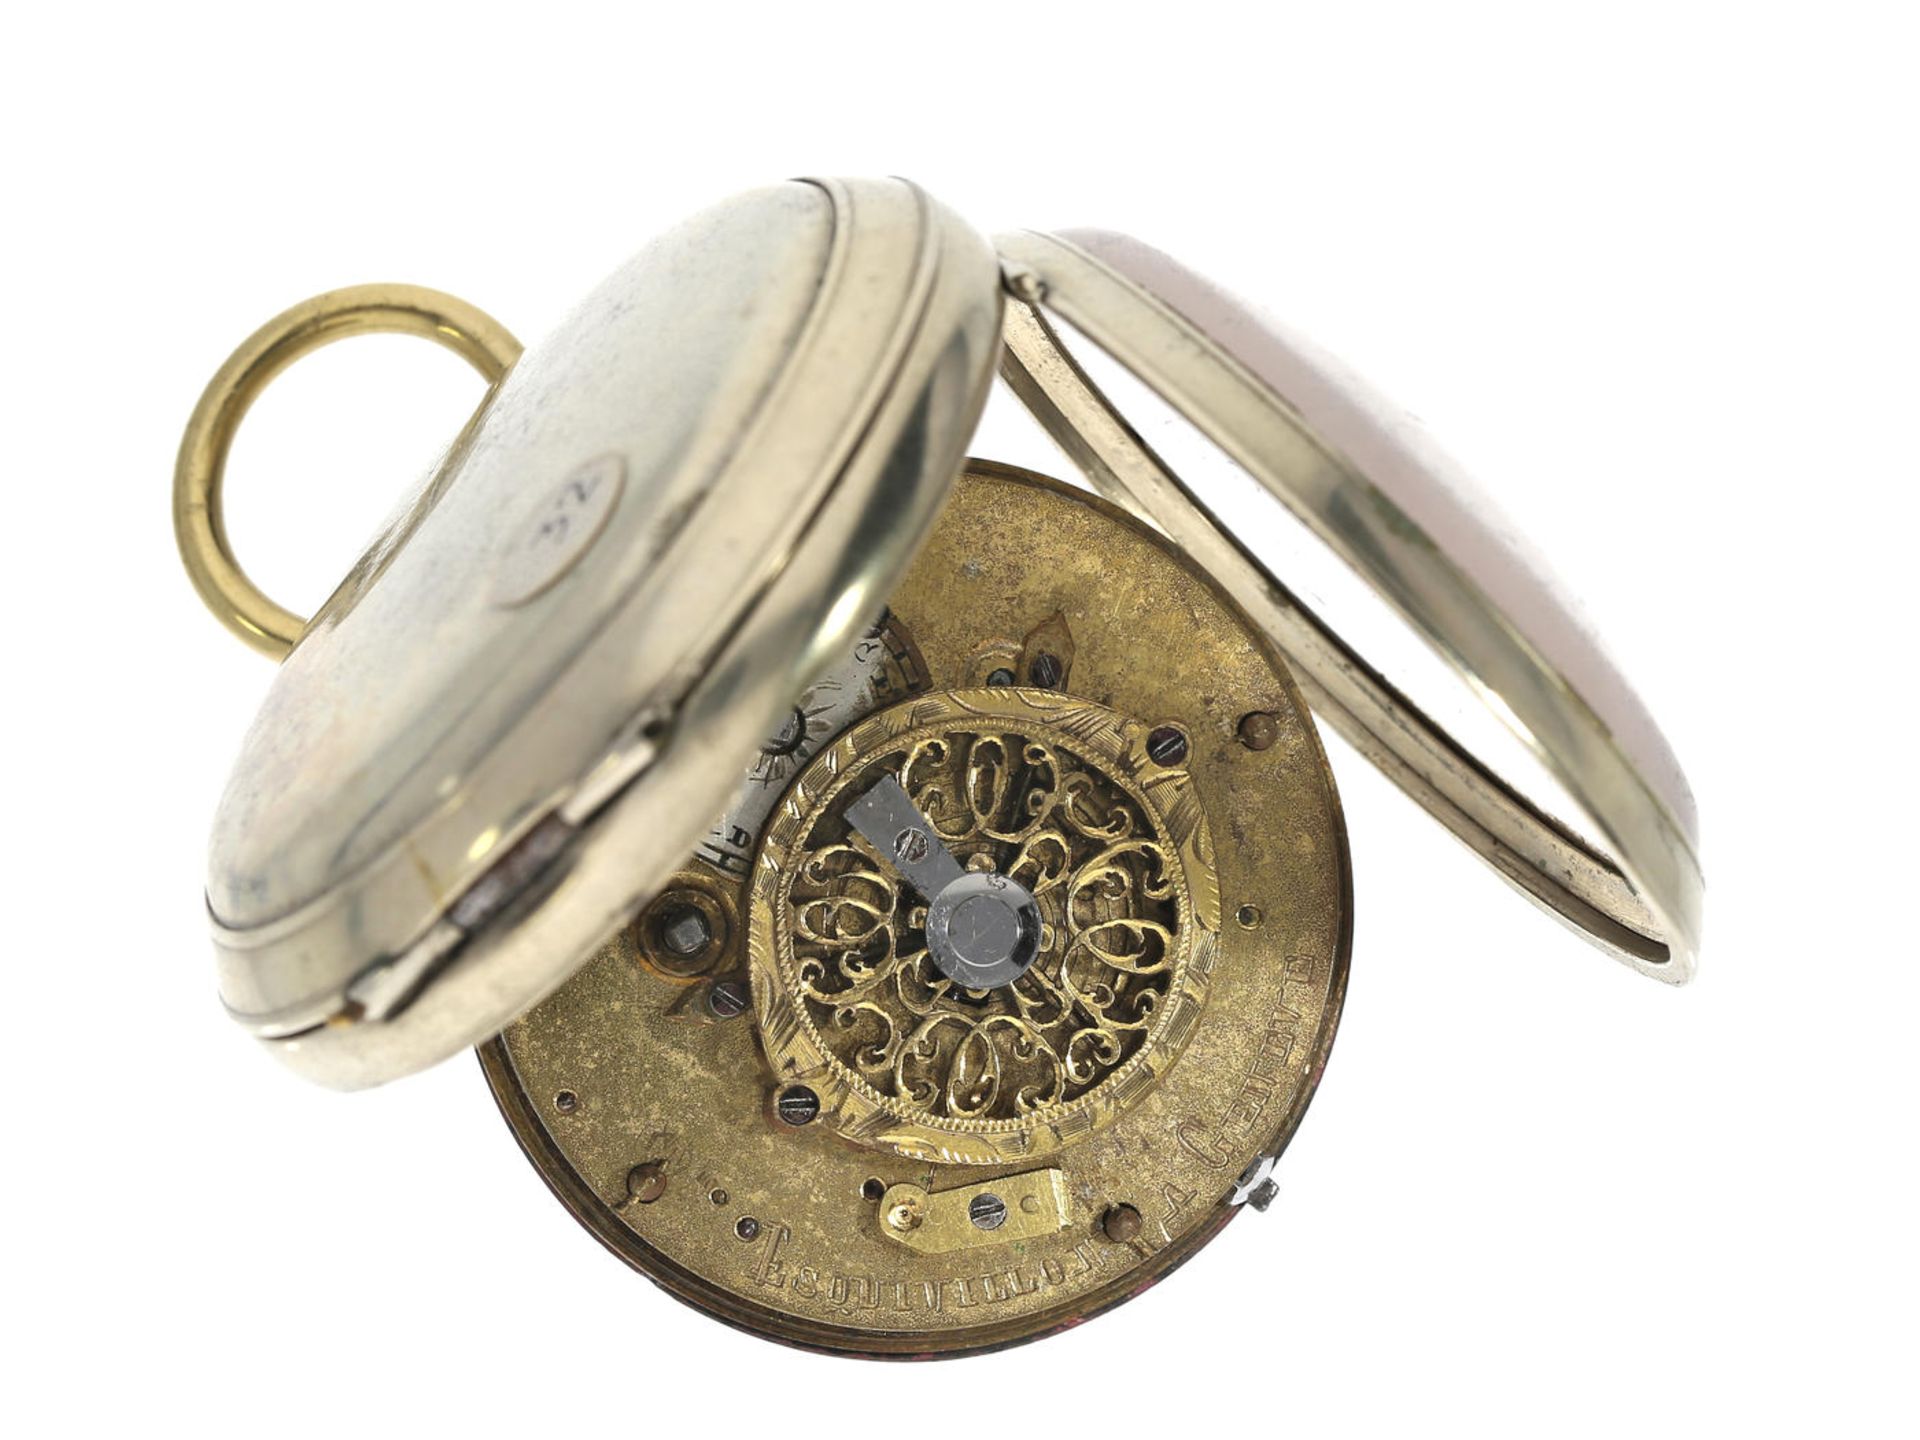 Taschenuhr: Spindeluhr, um 1800, signiert Esquivillon Geneve Ca. Ø47mm, ca. 89g, Nickelgehäuse, - Bild 3 aus 3